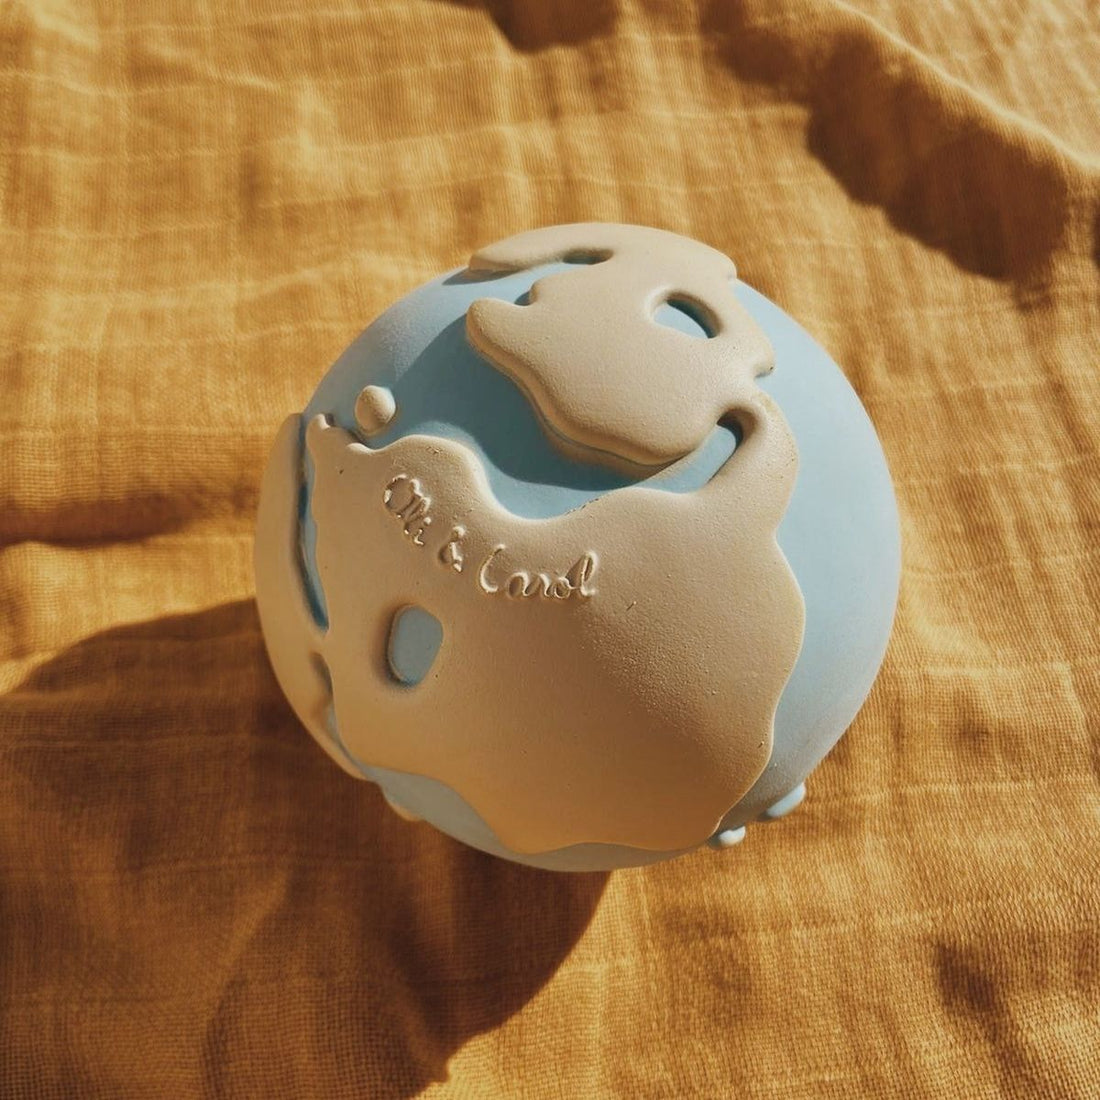 Earthy der Welt-Ball